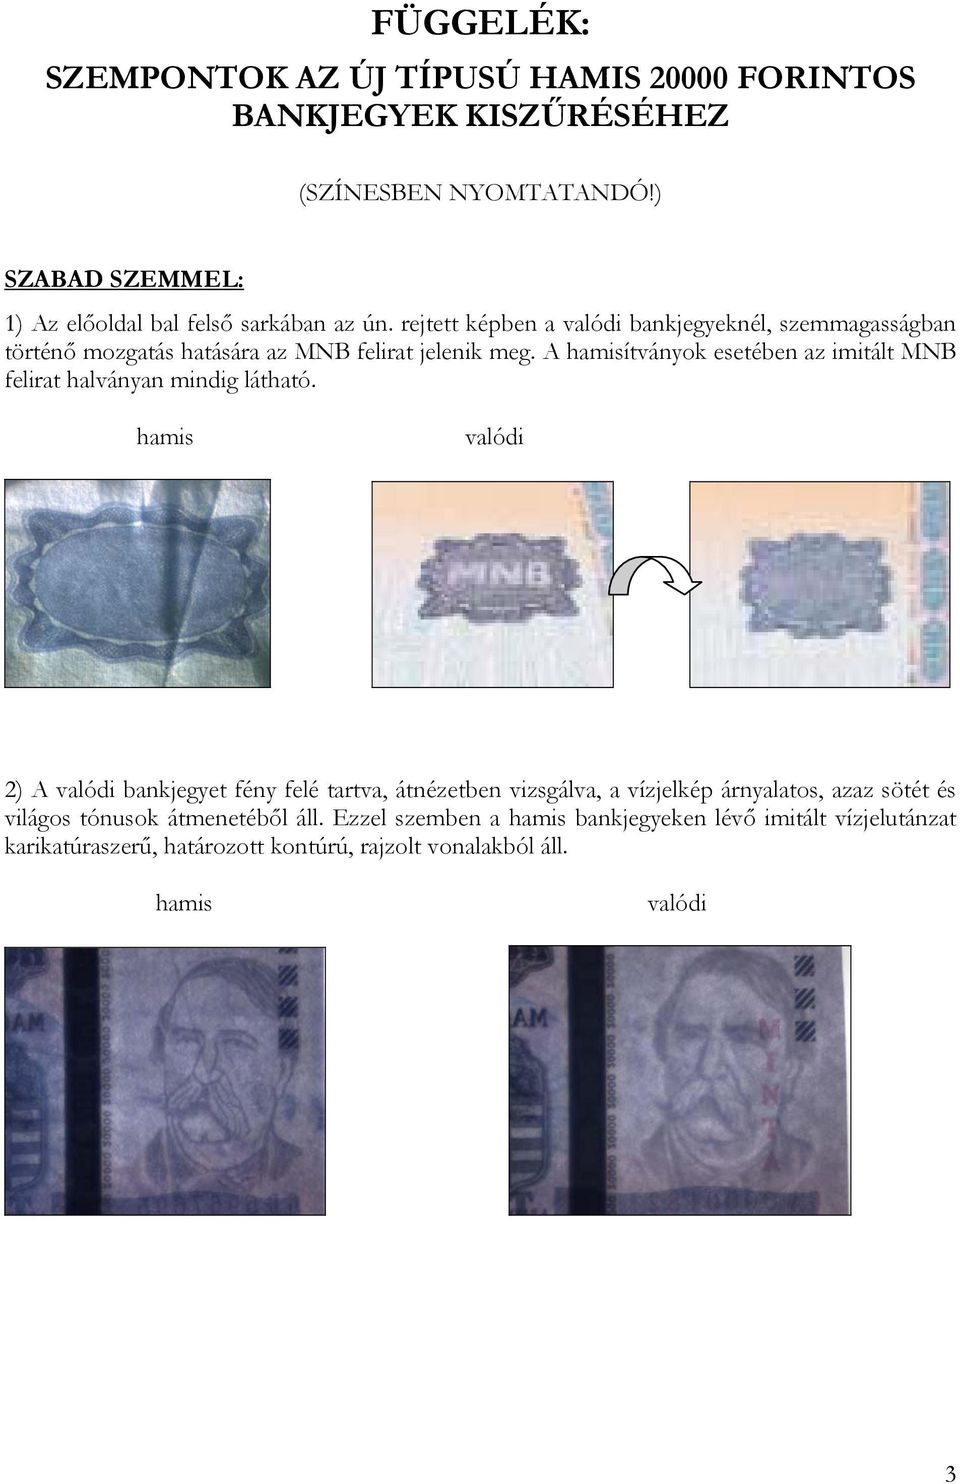 rejtett képben a bankjegyeknél, szemmagasságban történő mozgatás hatására az MNB felirat jelenik meg.